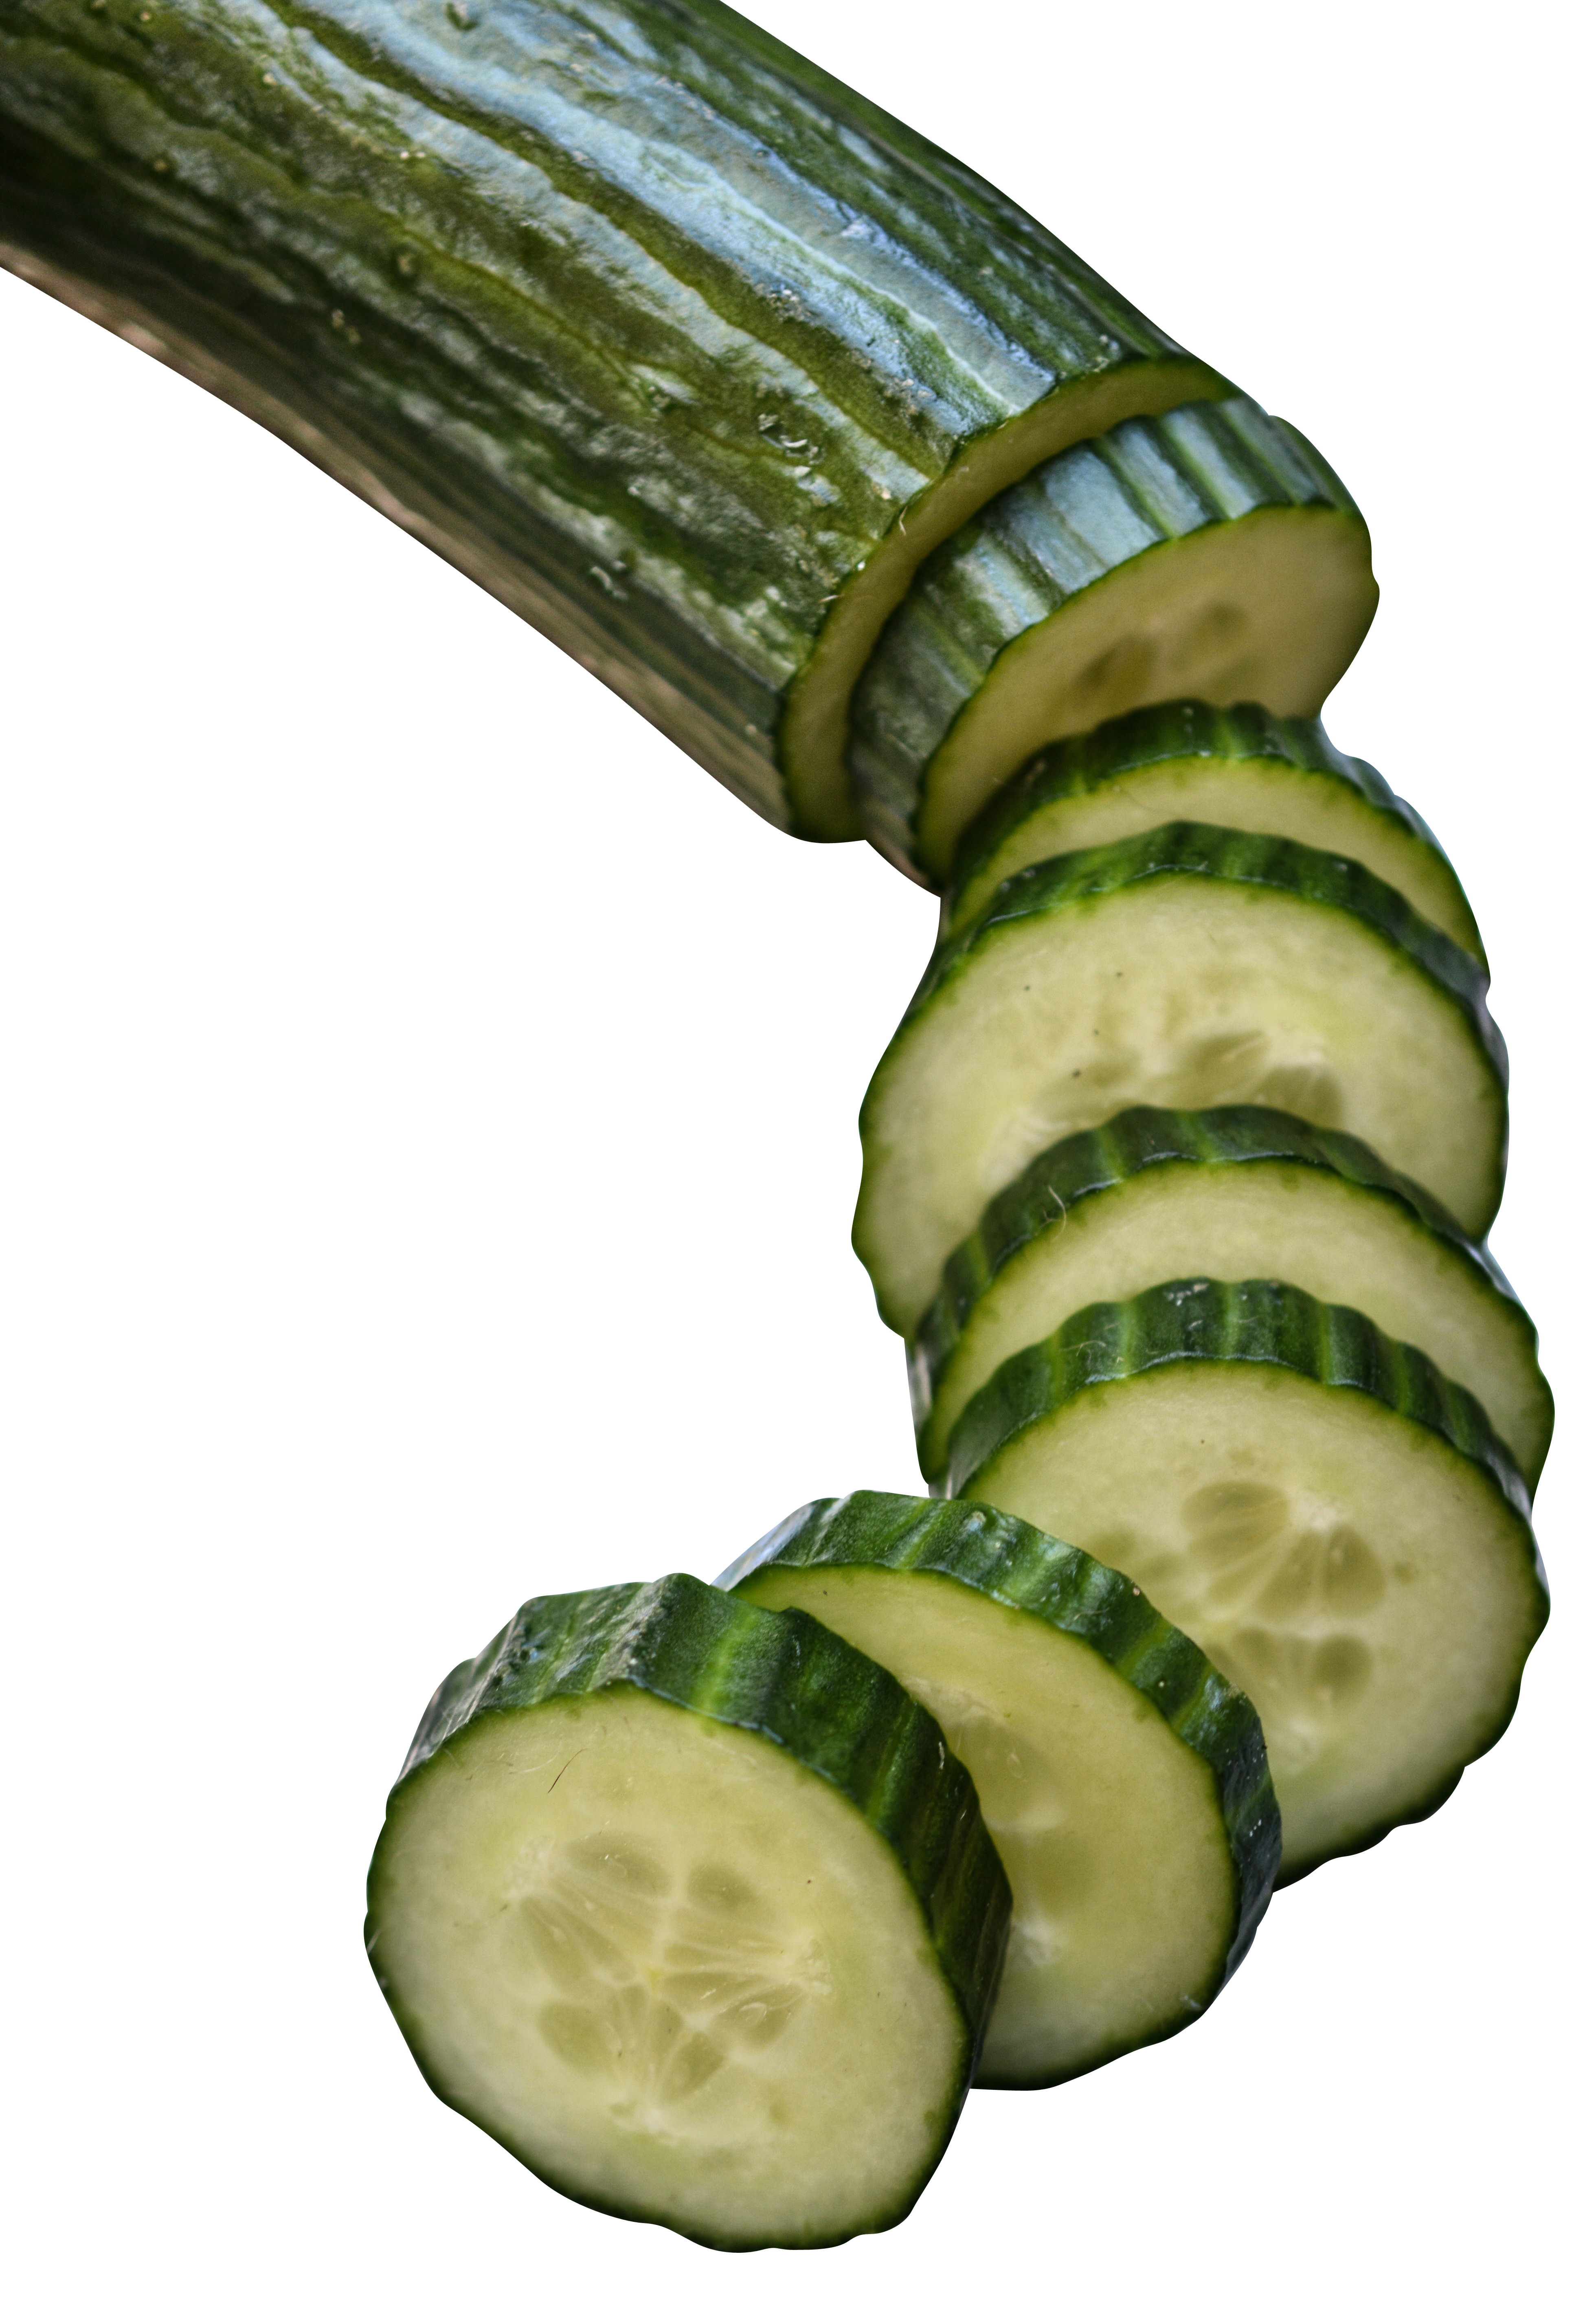 Cucumber in slices